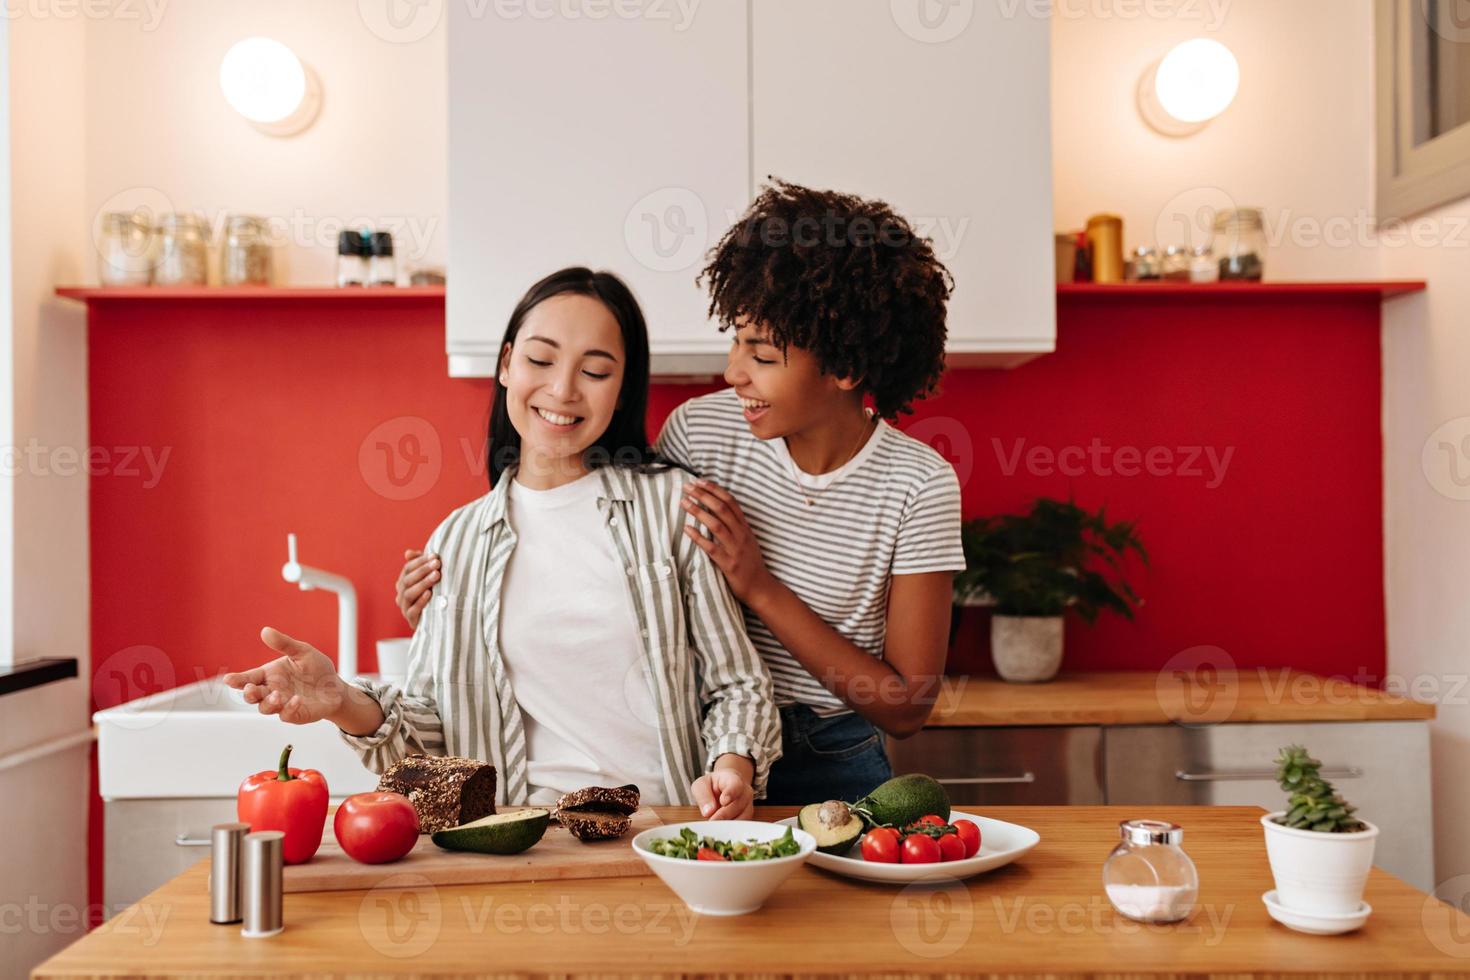 mulheres bonitas se comunicam com alegria. meninas em tops brancos cozinham comida de legumes. foto